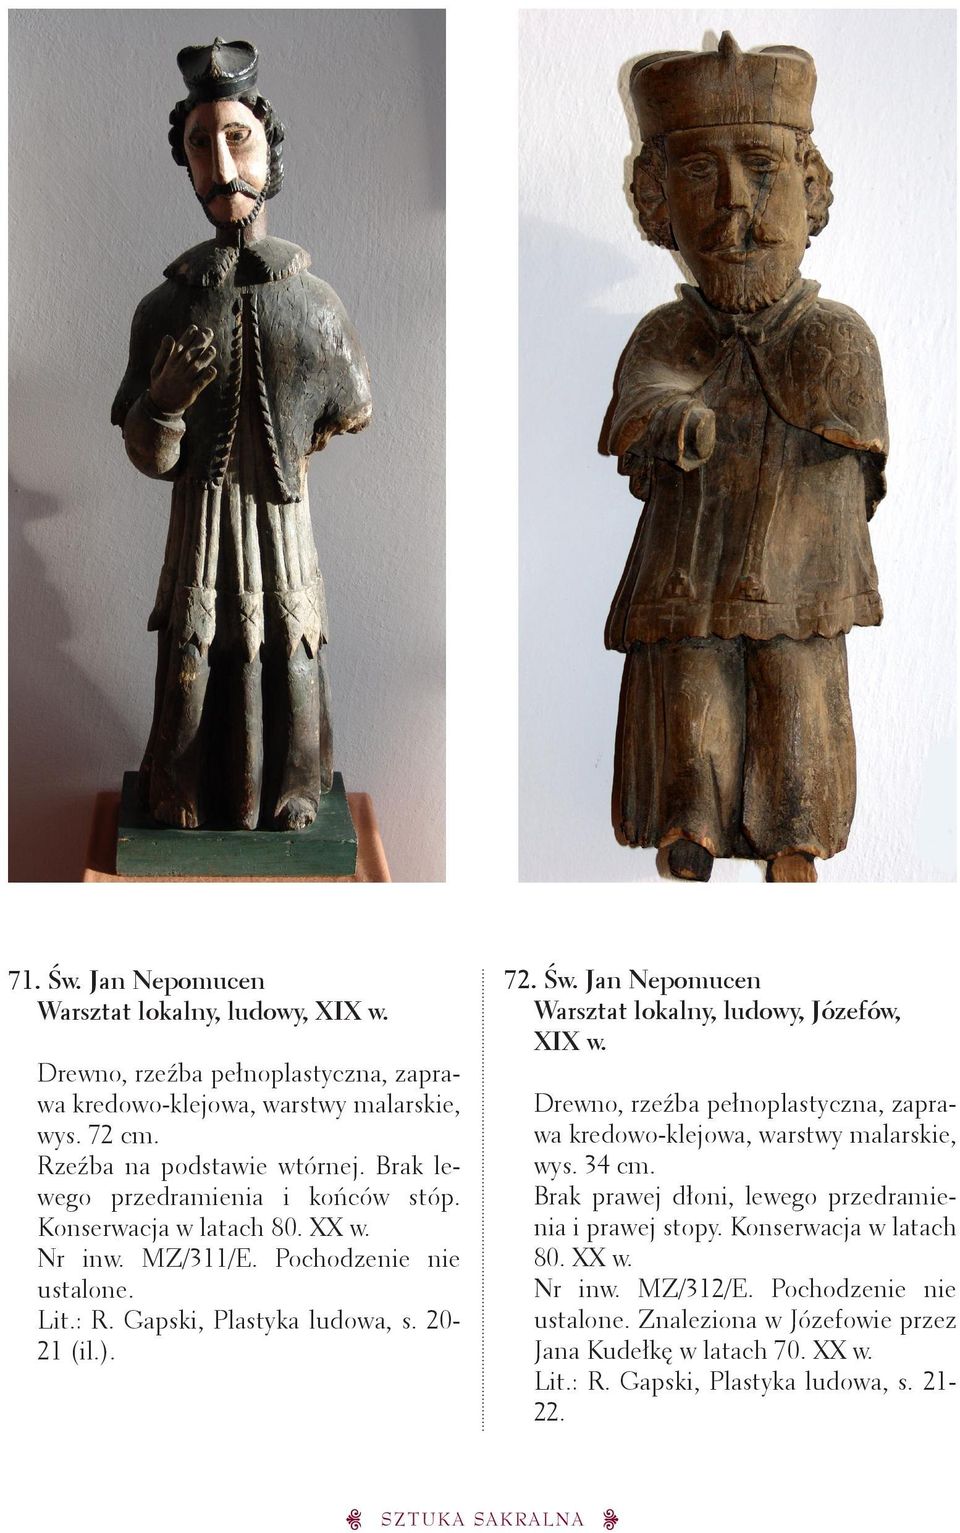 Jan Nepomucen Warsztat lokalny, ludowy, Józefów, XIX w. wys. 34 cm. Brak prawej dłoni, lewego przedramienia i prawej stopy.